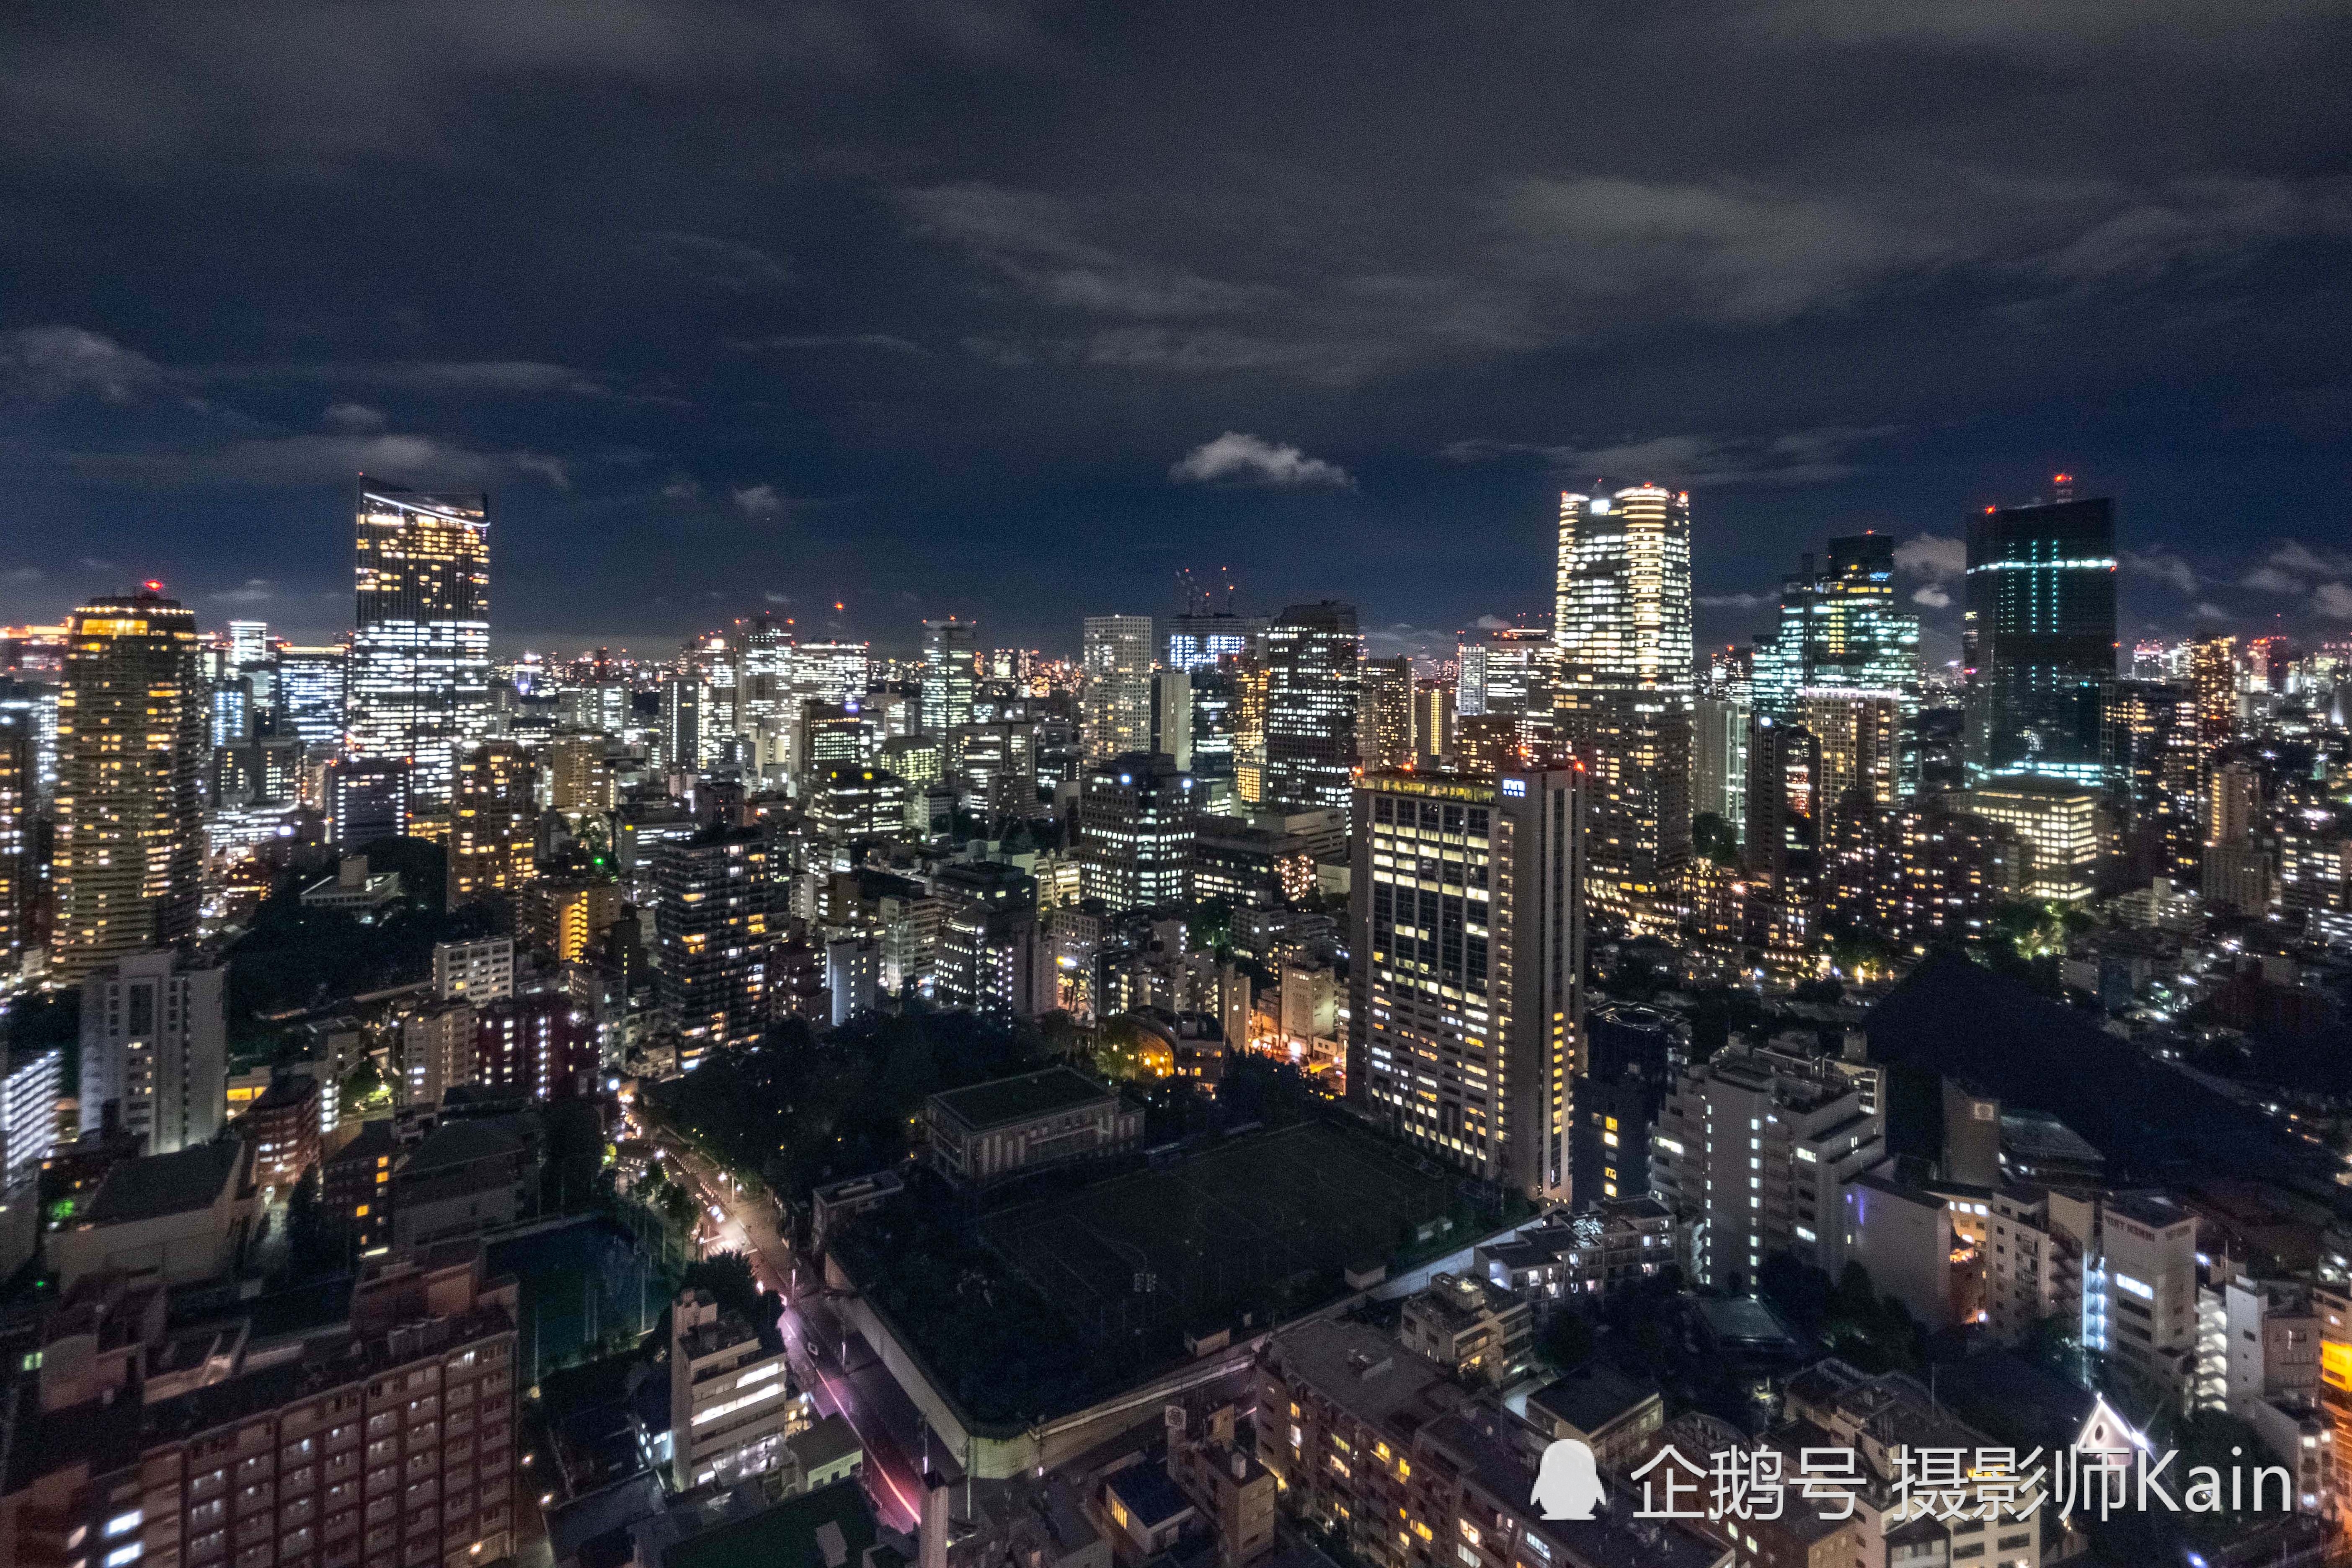 实拍夜幕中的日本东京,游客感慨:原来夜景并非一定要有彩色led